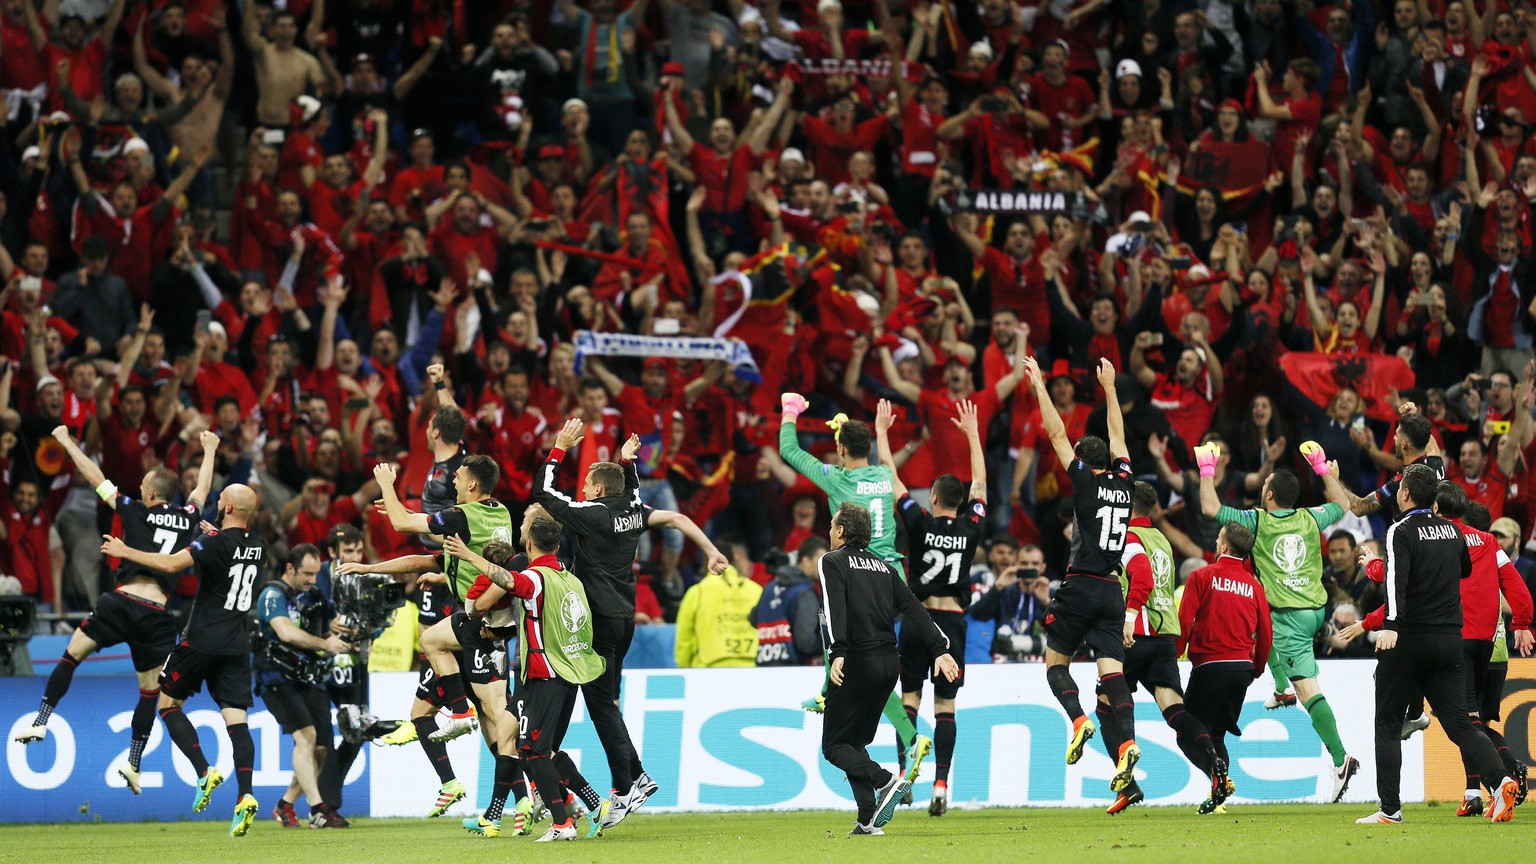 Der Abschluss glückte Albanien mit dem ersten Tor und dem ersten Sieg an einem grossen Turnier.